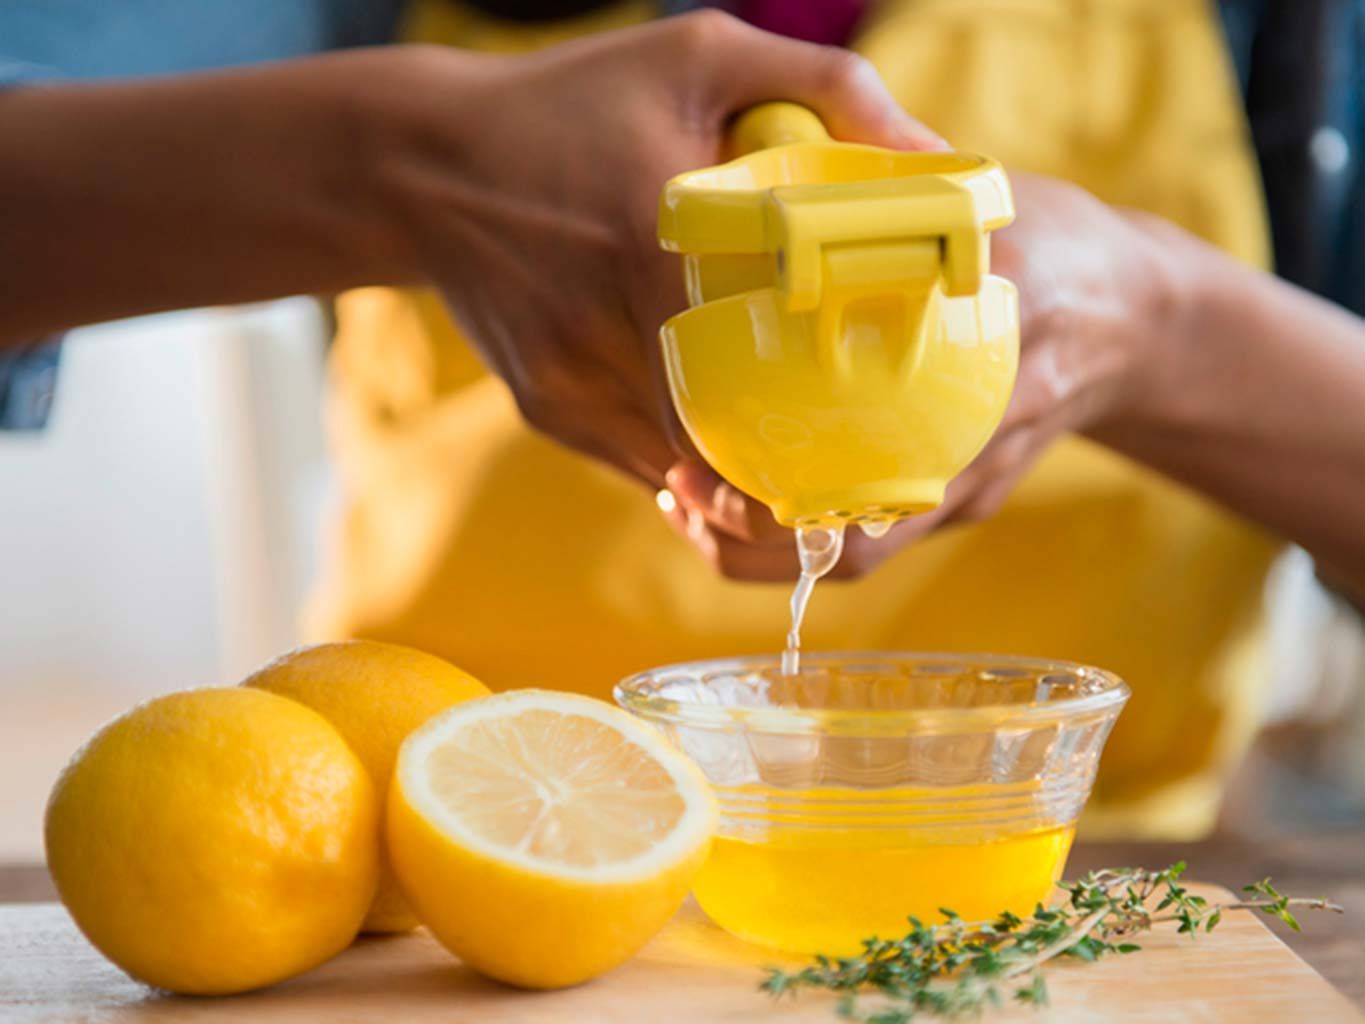 Cómo usar exprimidor de limones. Compra una exprimidora